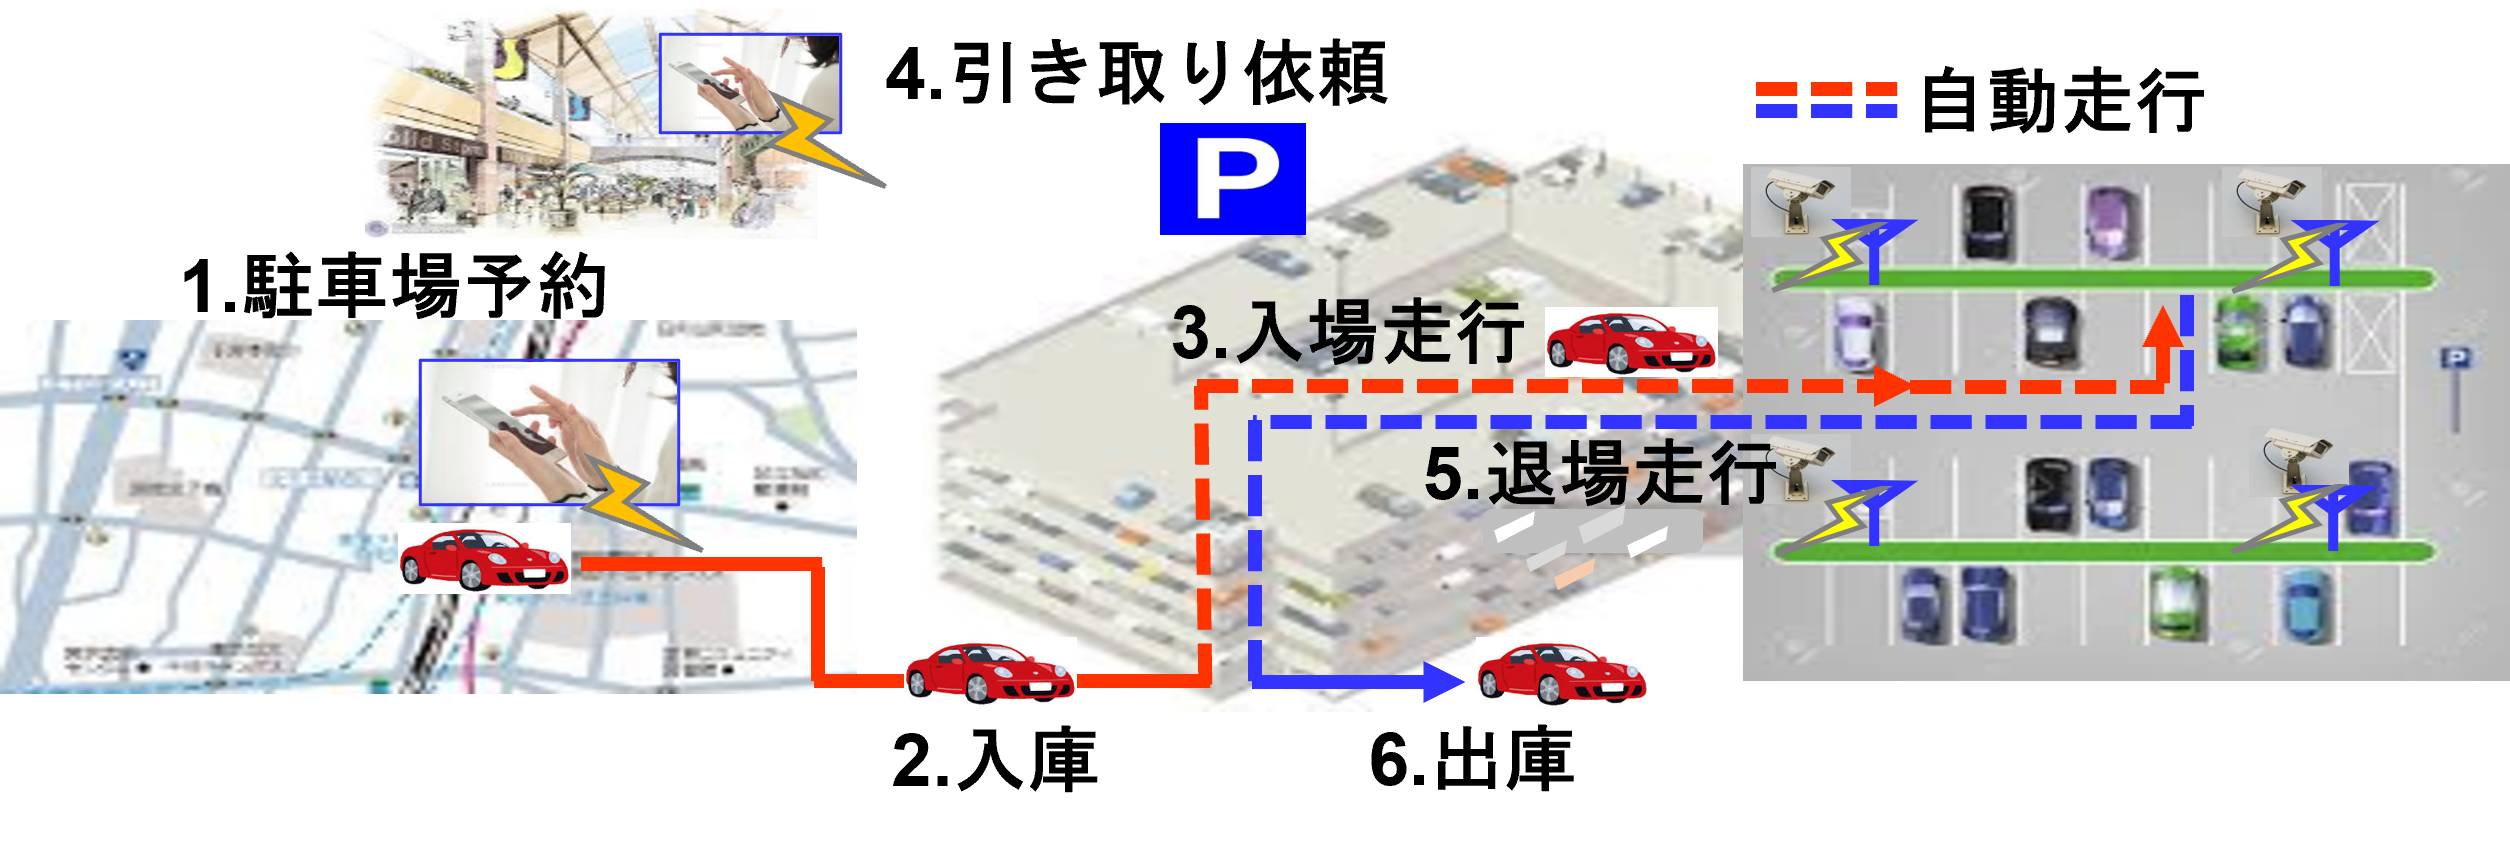 autonomous valet parking